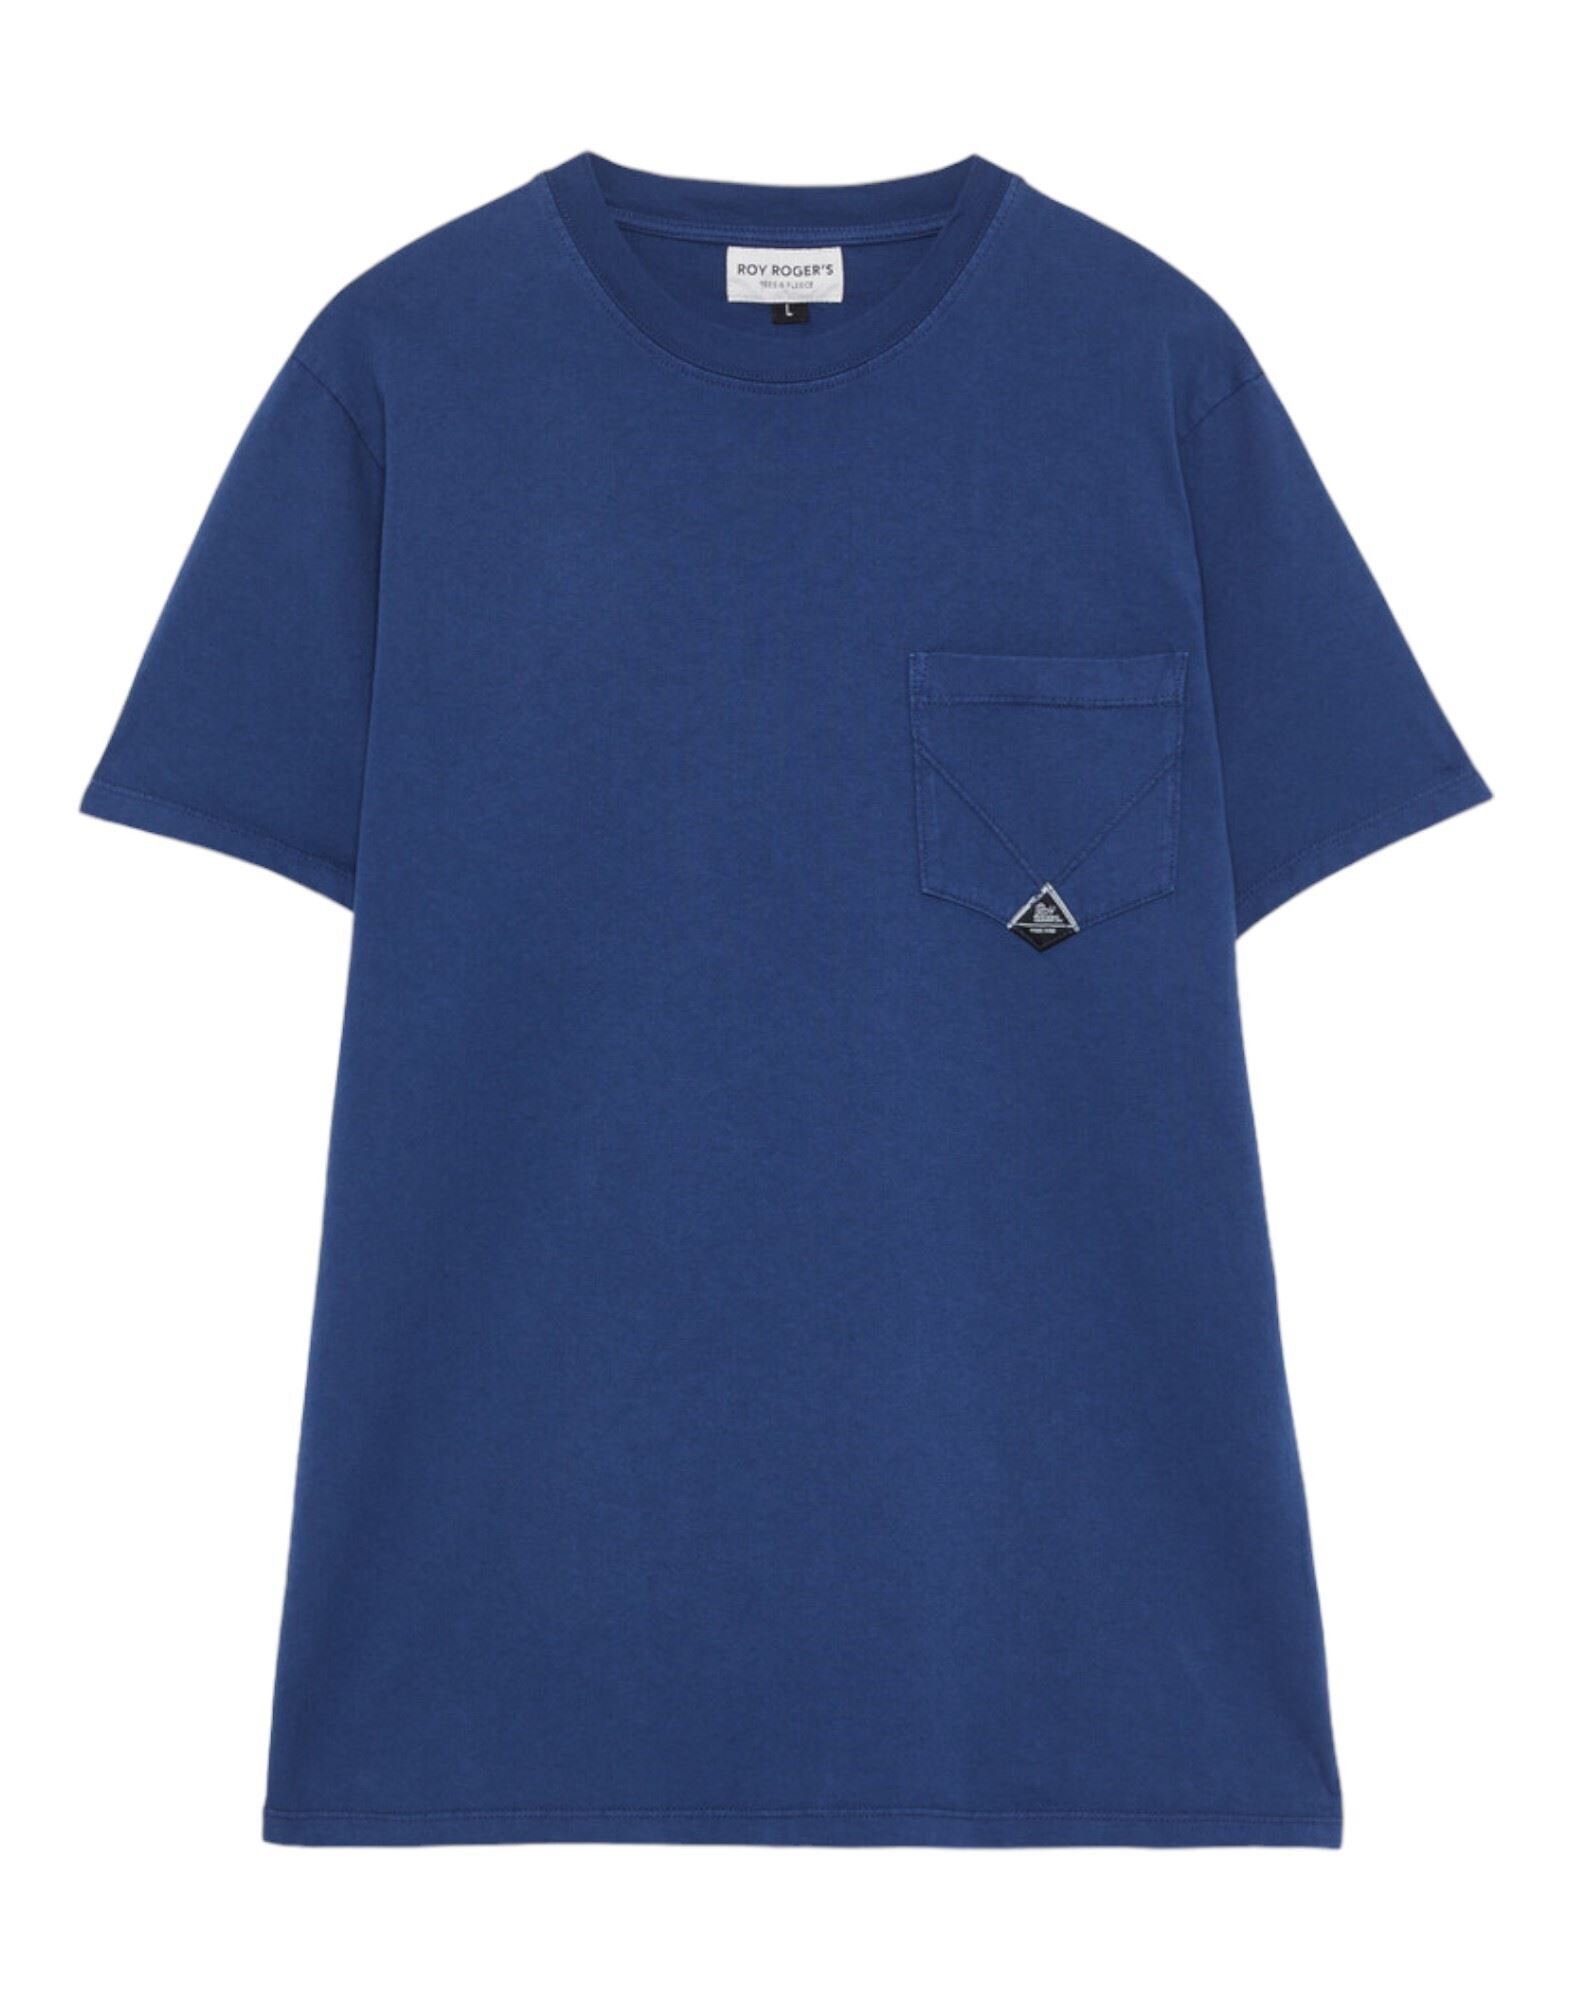 ROŸ ROGER'S T-shirts Herren Blau von ROŸ ROGER'S